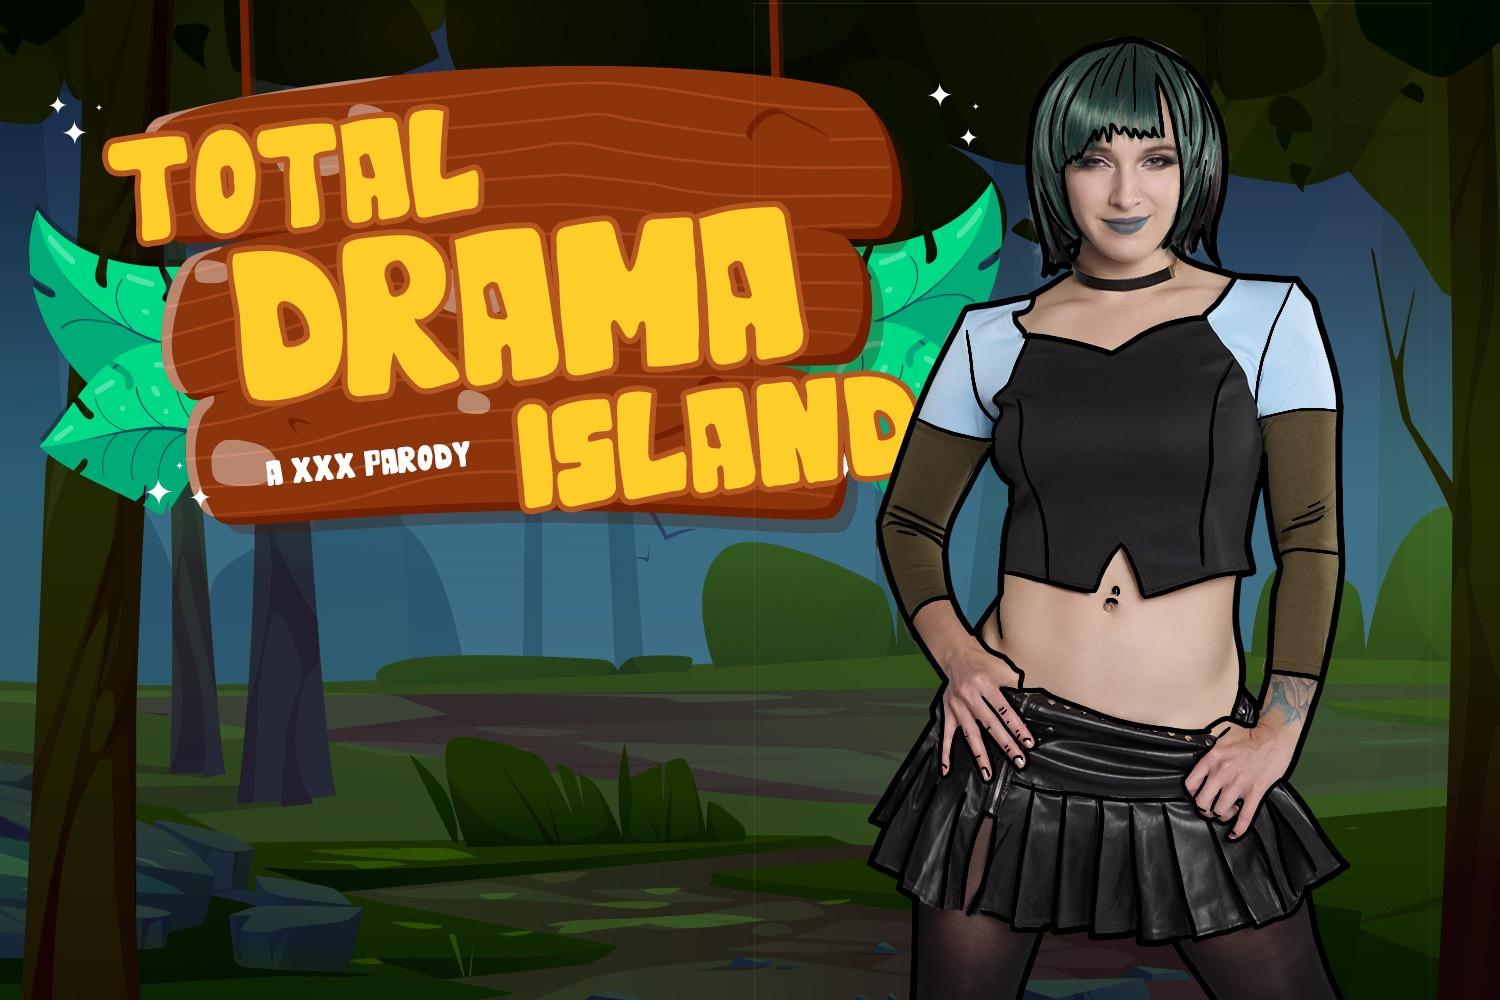 Total Drama Island A XXX Parody 2048p